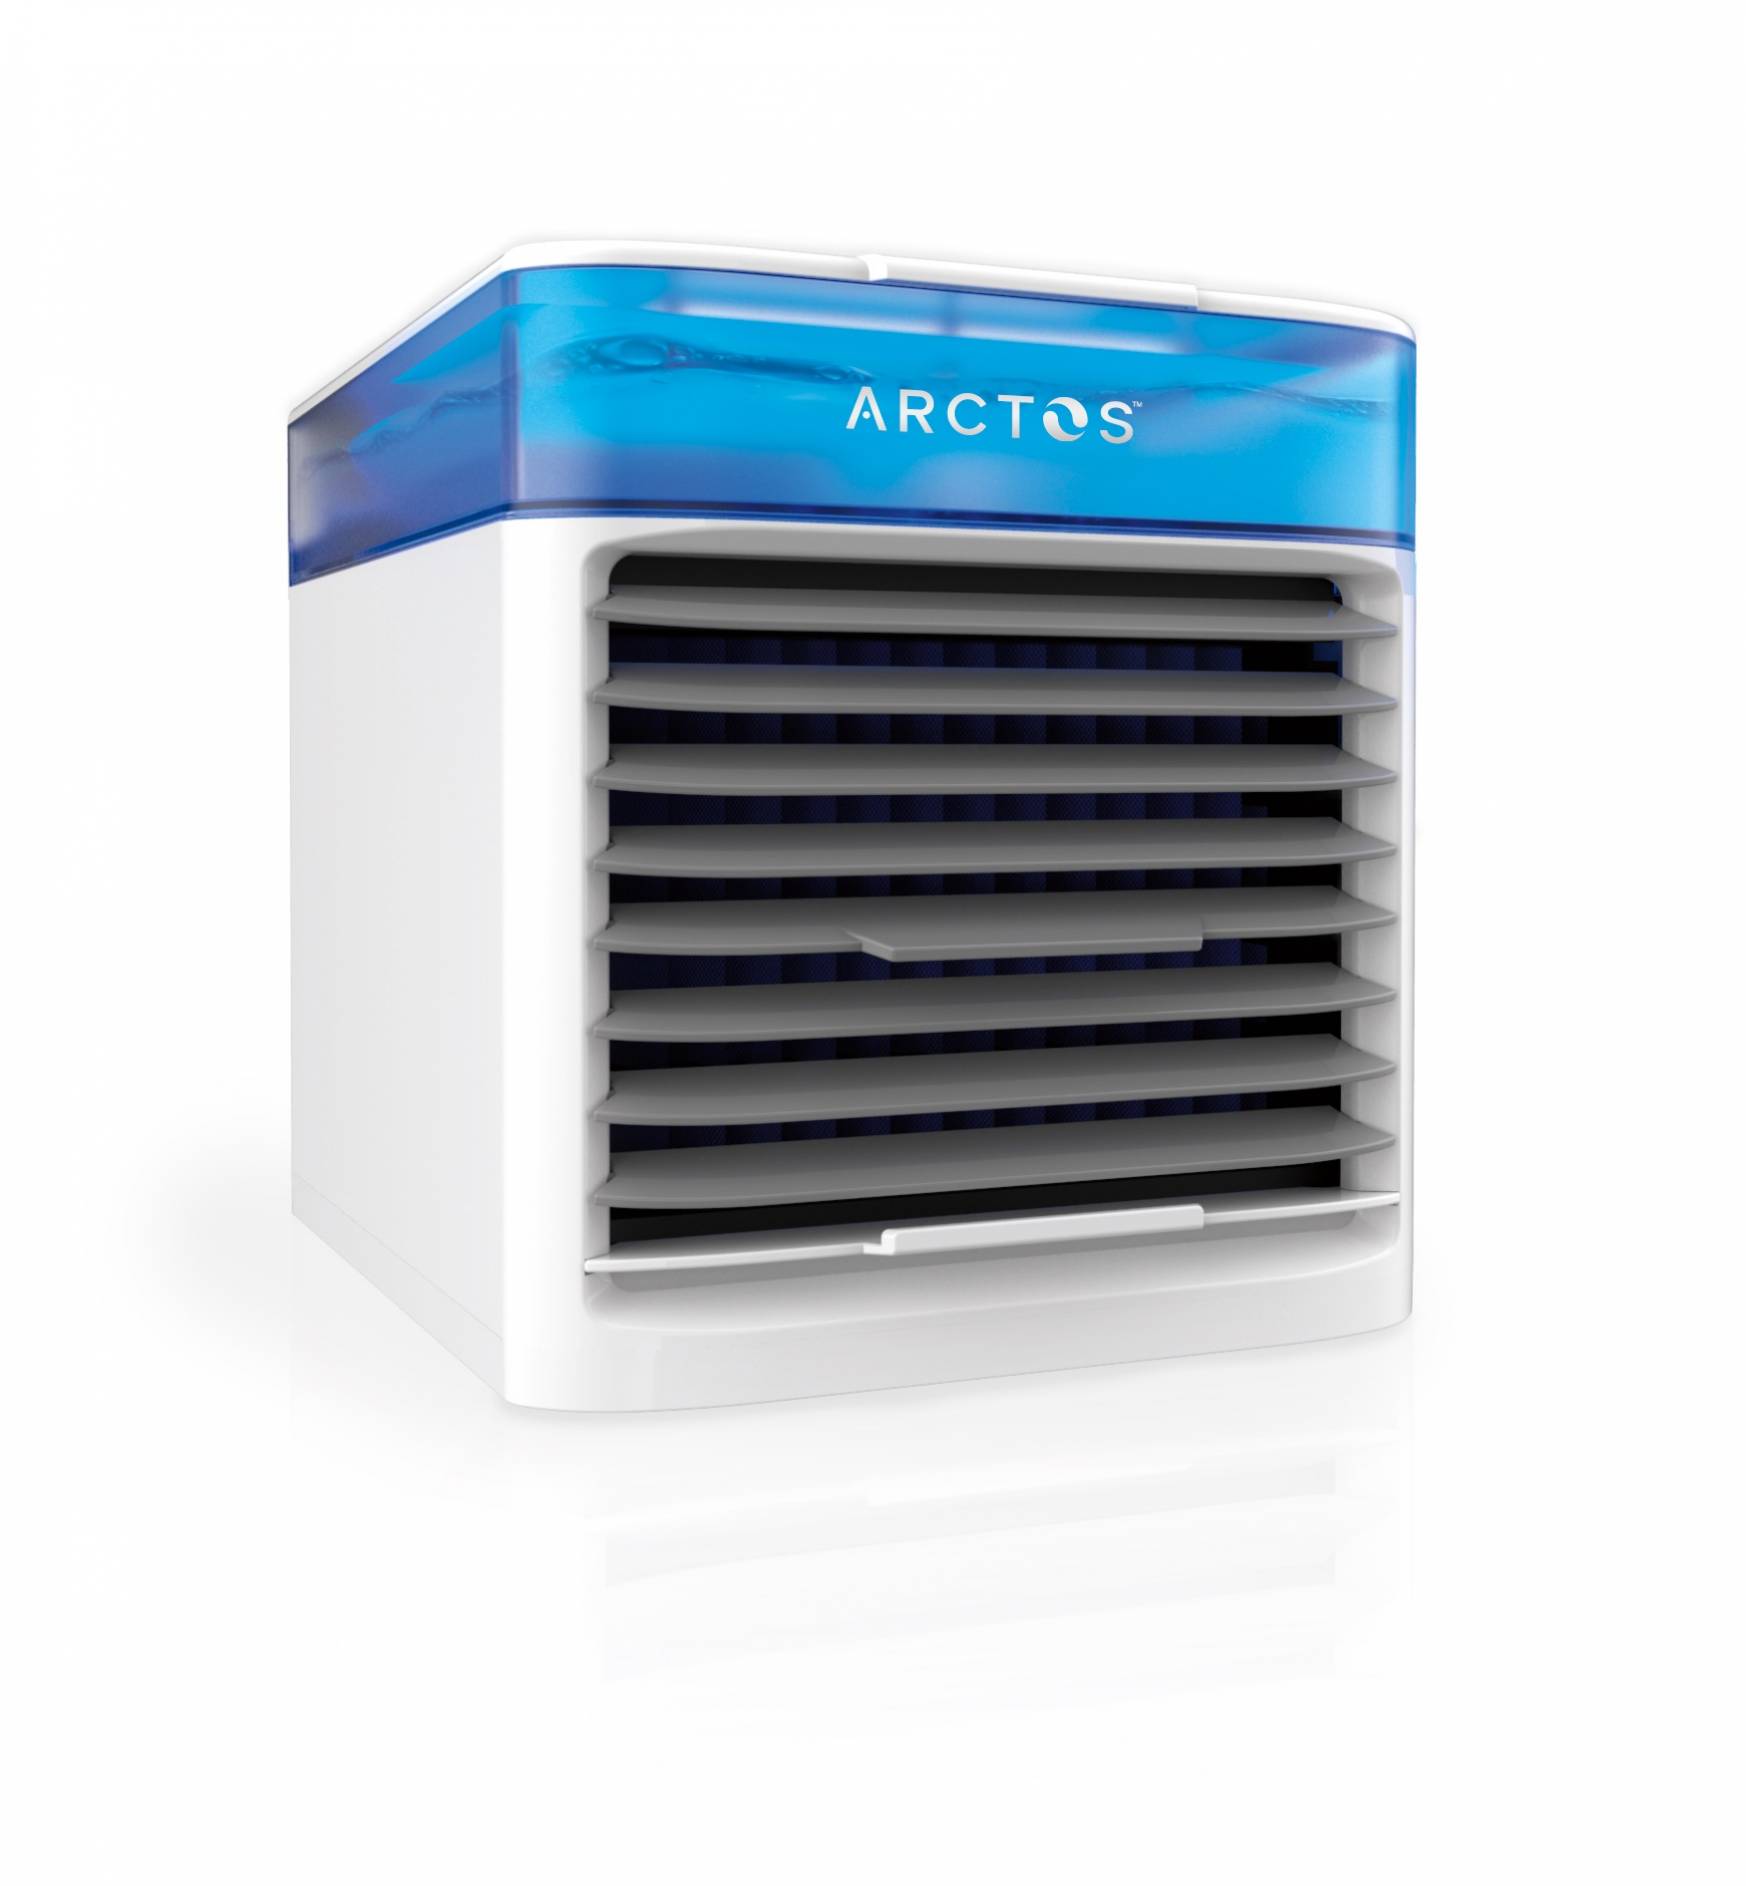 Arctos Cooler Mini Air Conditioner